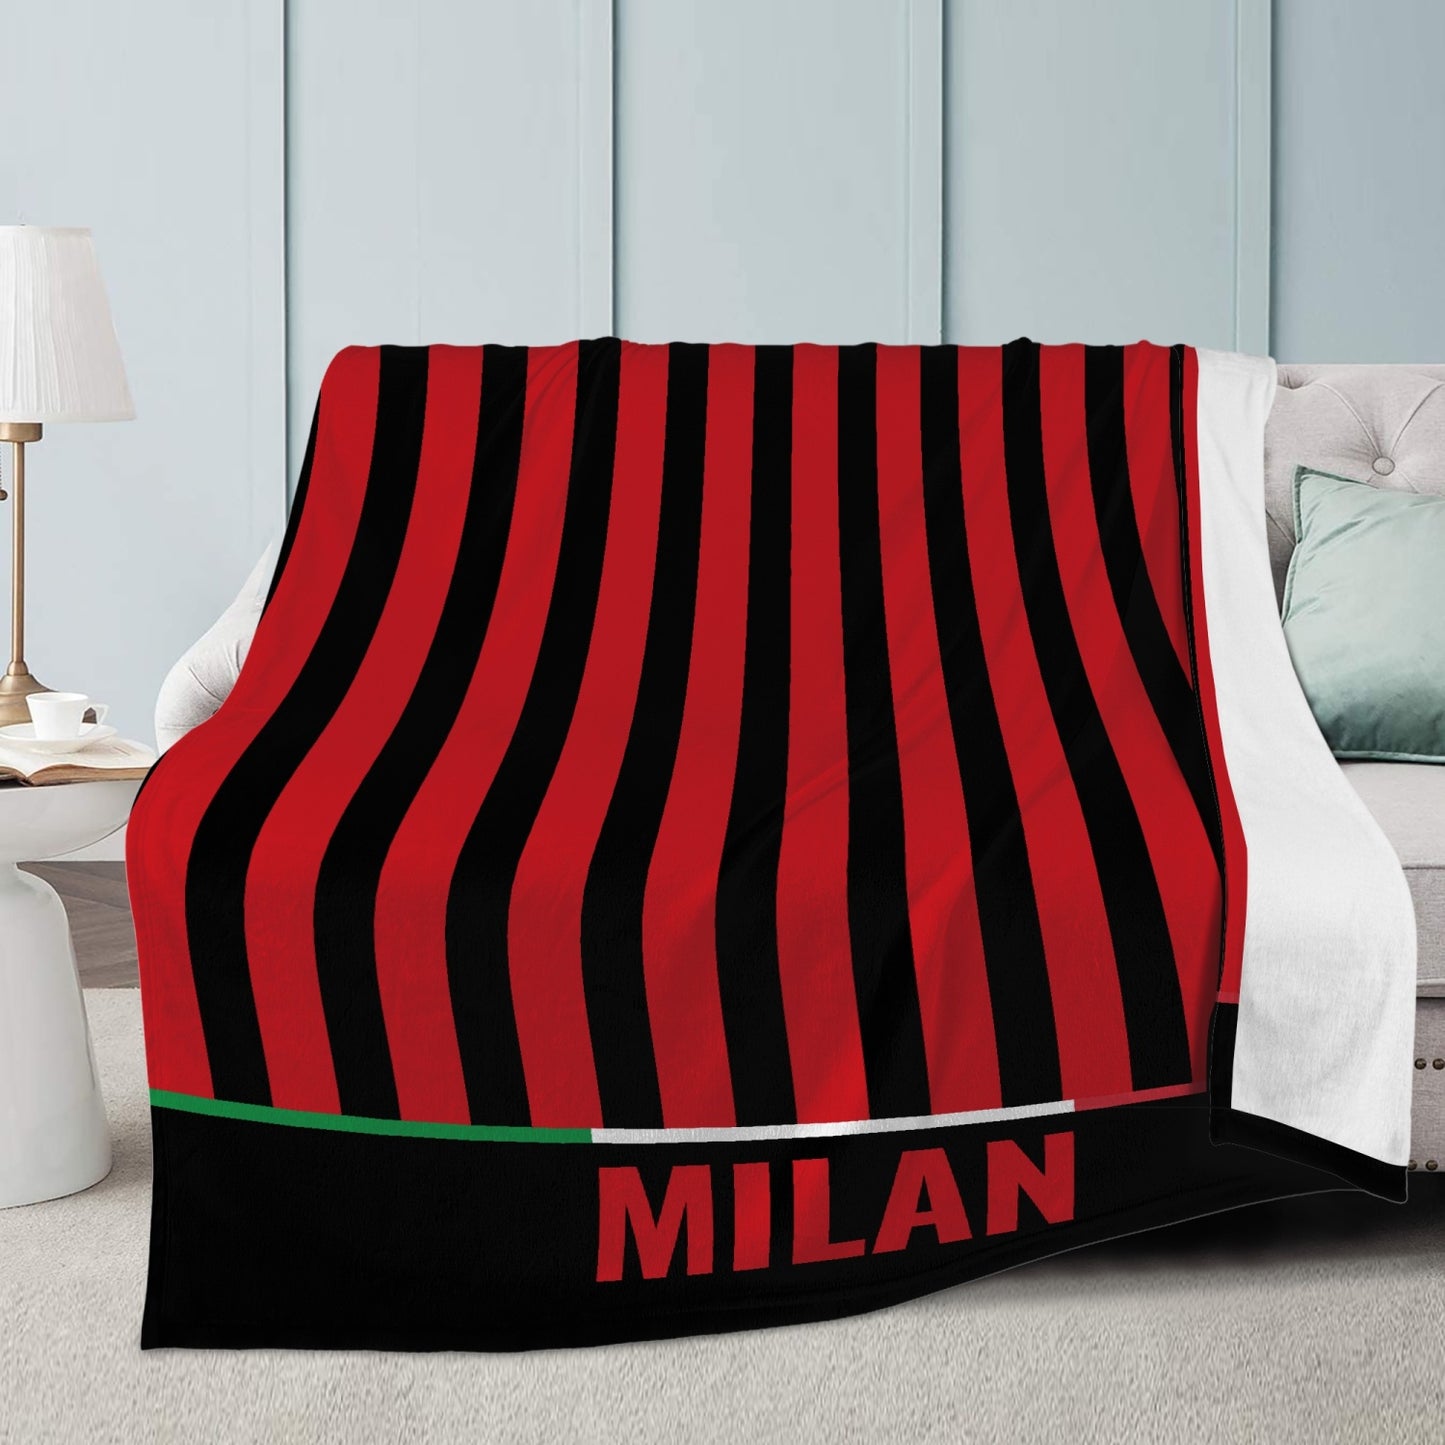 Milan Fleece Blanket